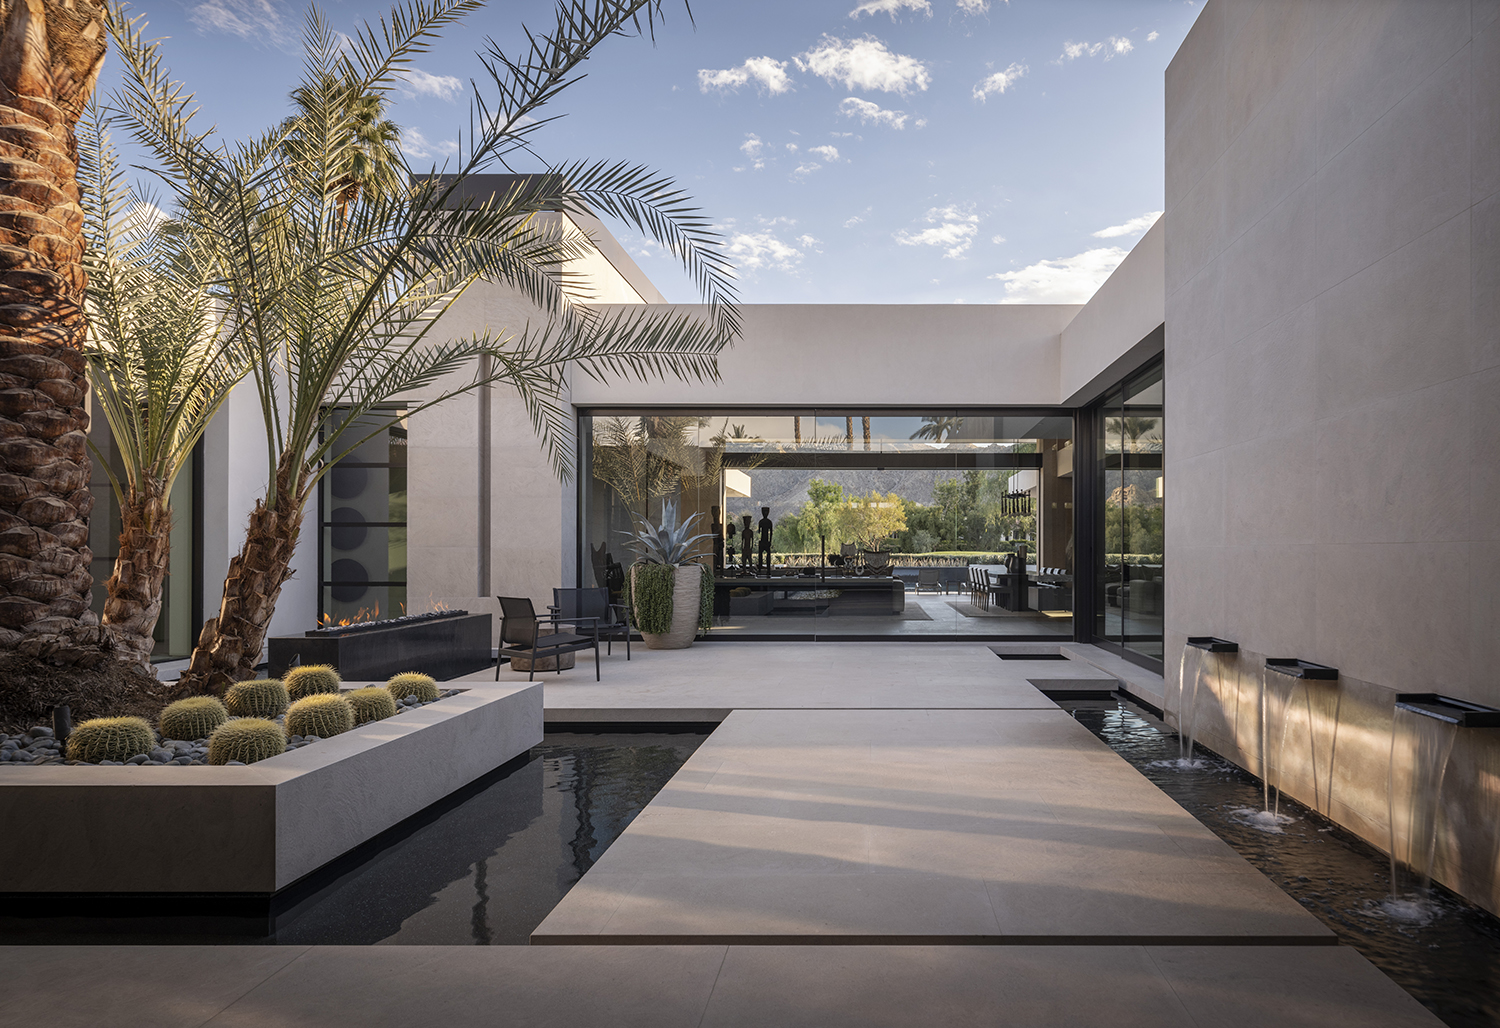 The architecure of a modern California desert residence